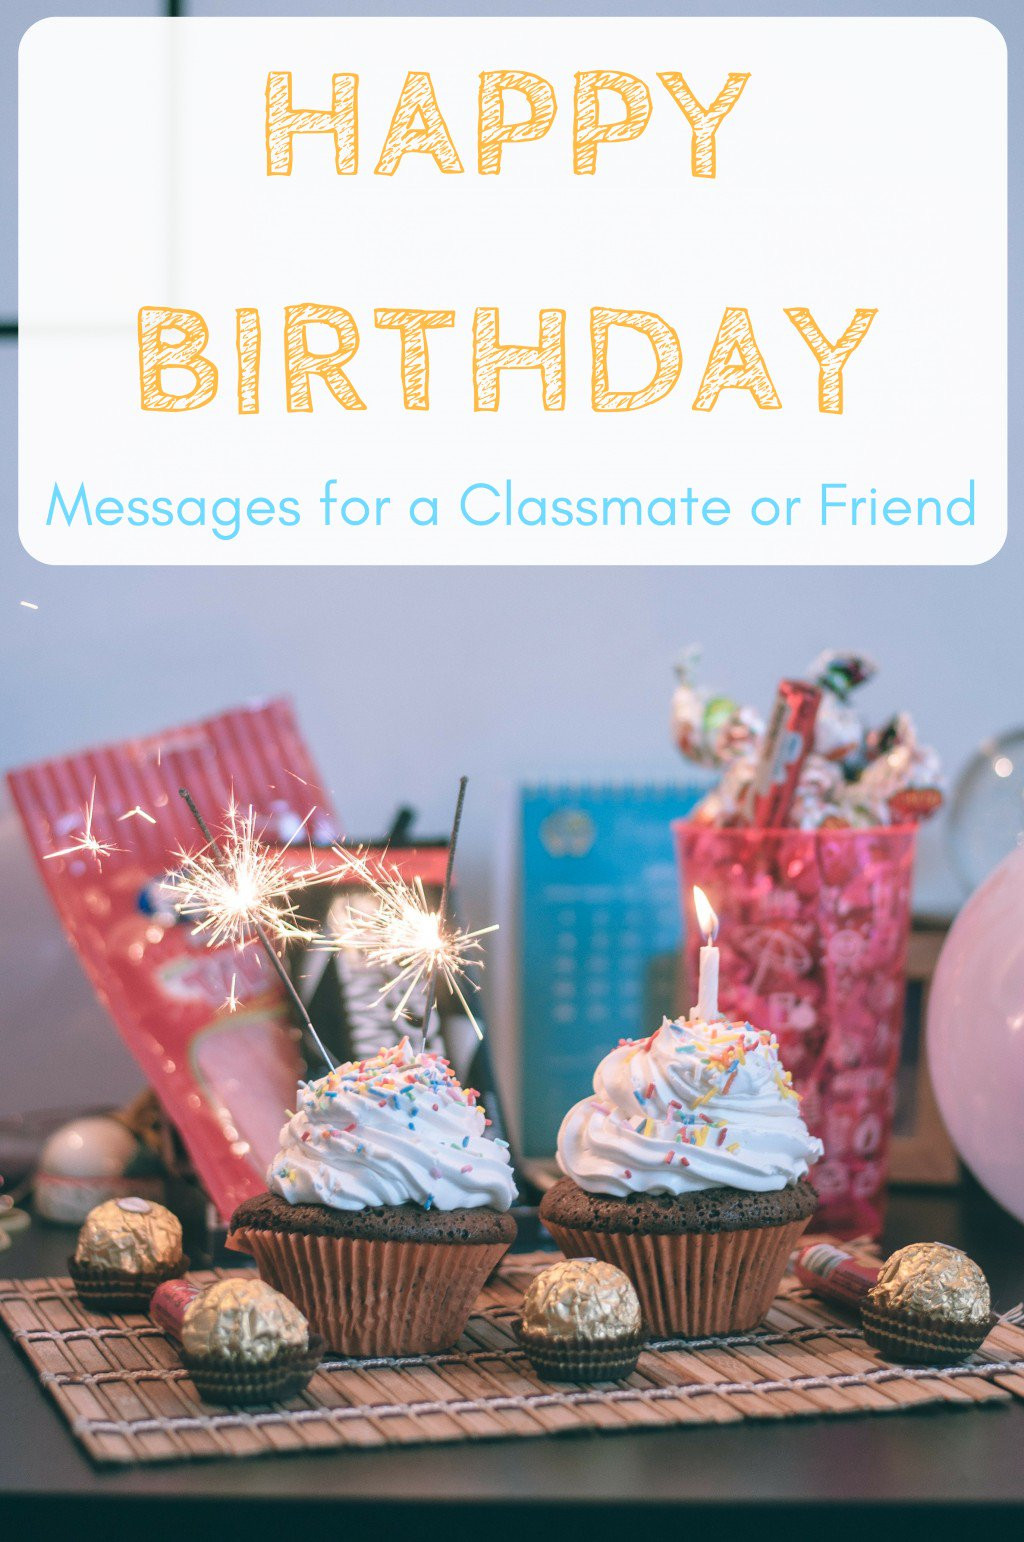 A Happy Birthday Wishes
 Happy Birthday Wishes for a Classmate School Friend or